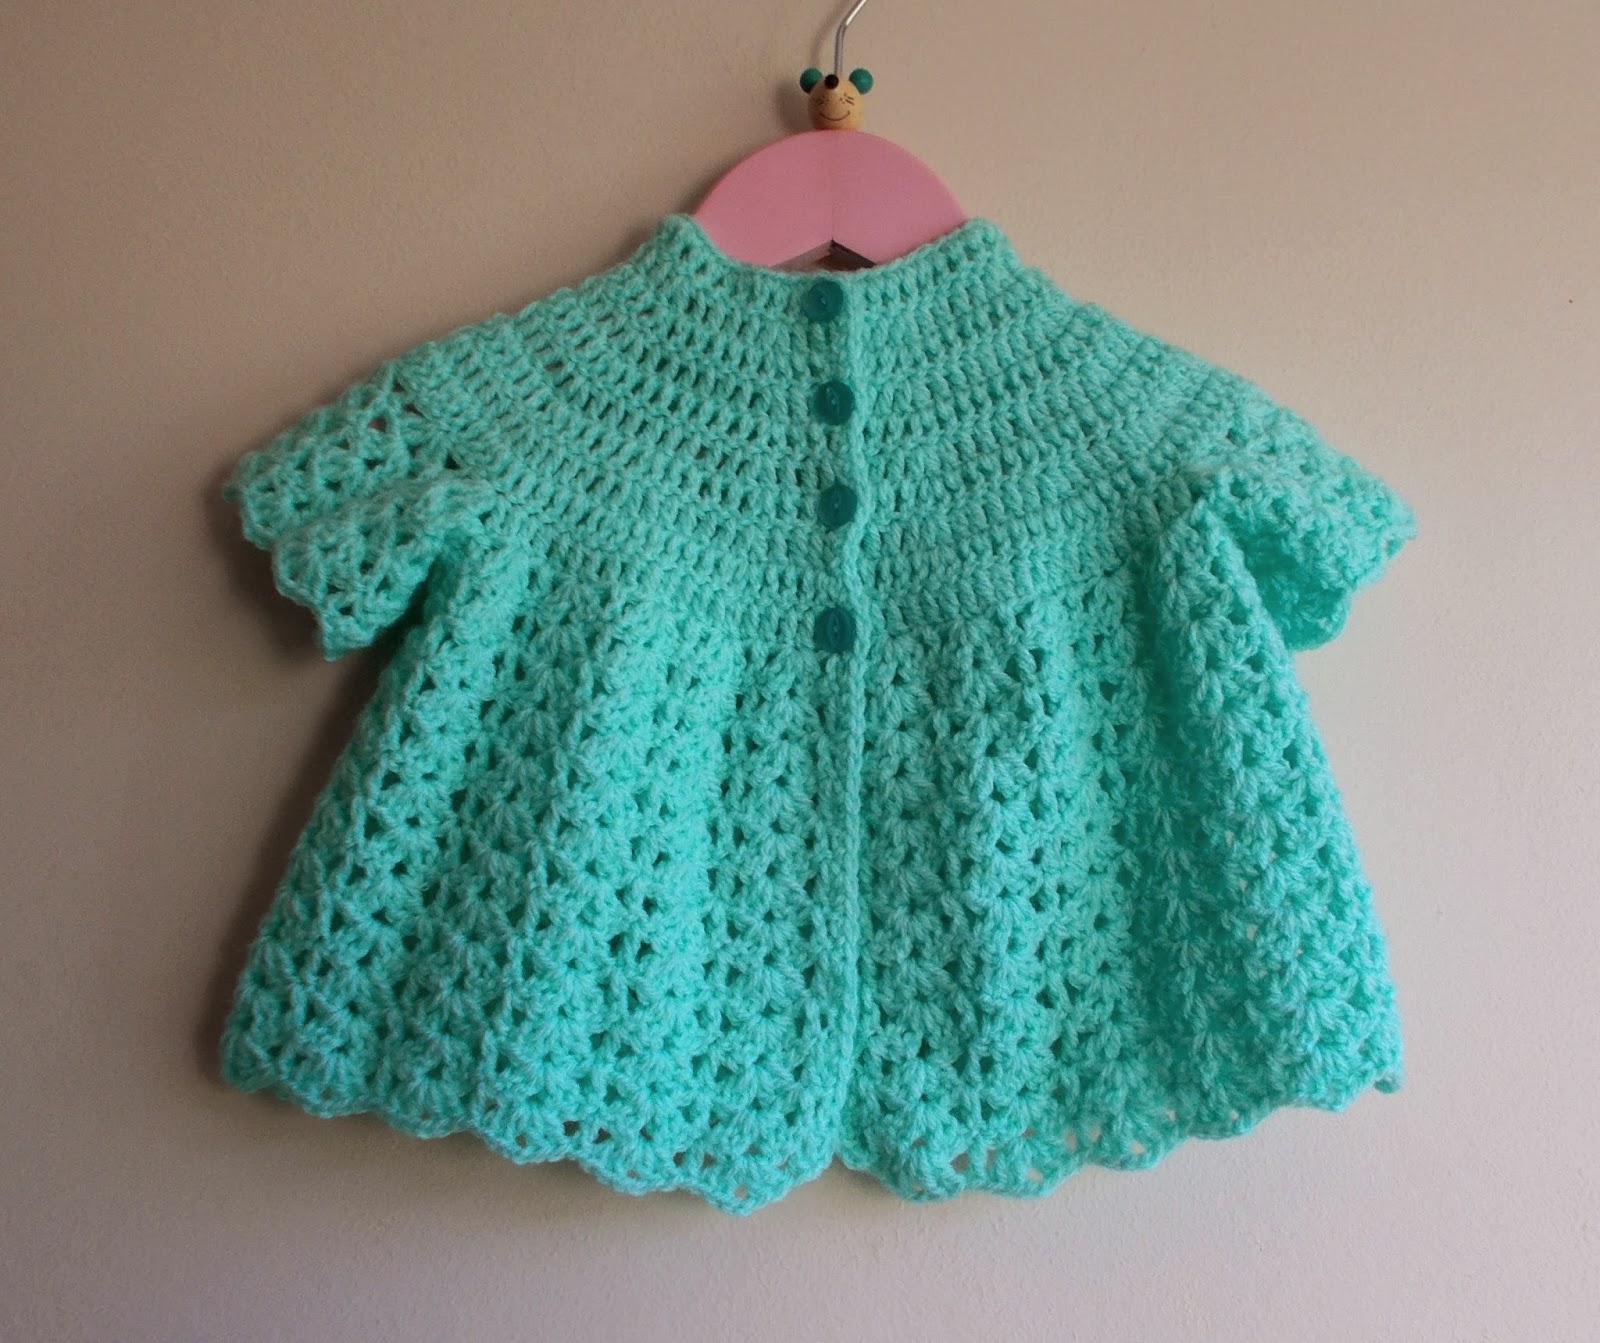 Marianna's Lazy Daisy Days: Crochet Baby Jacket for Spring